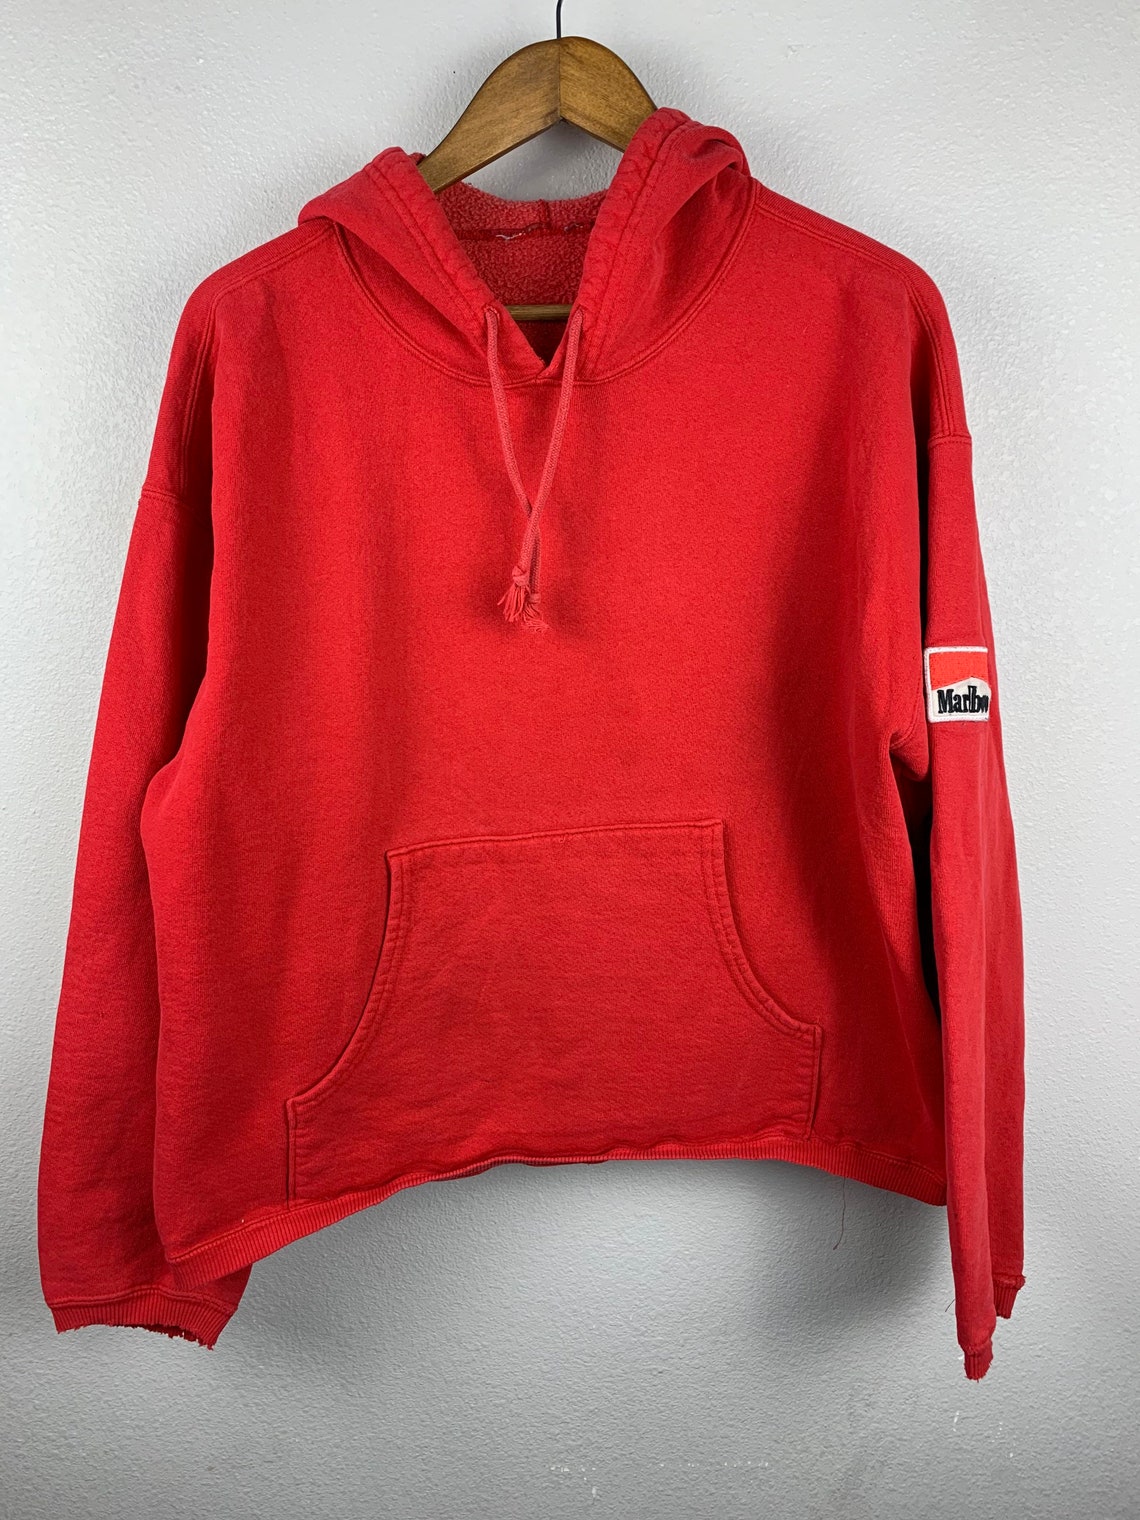 Vintage Marlboro mens red hoodie sweatshirt | Etsy